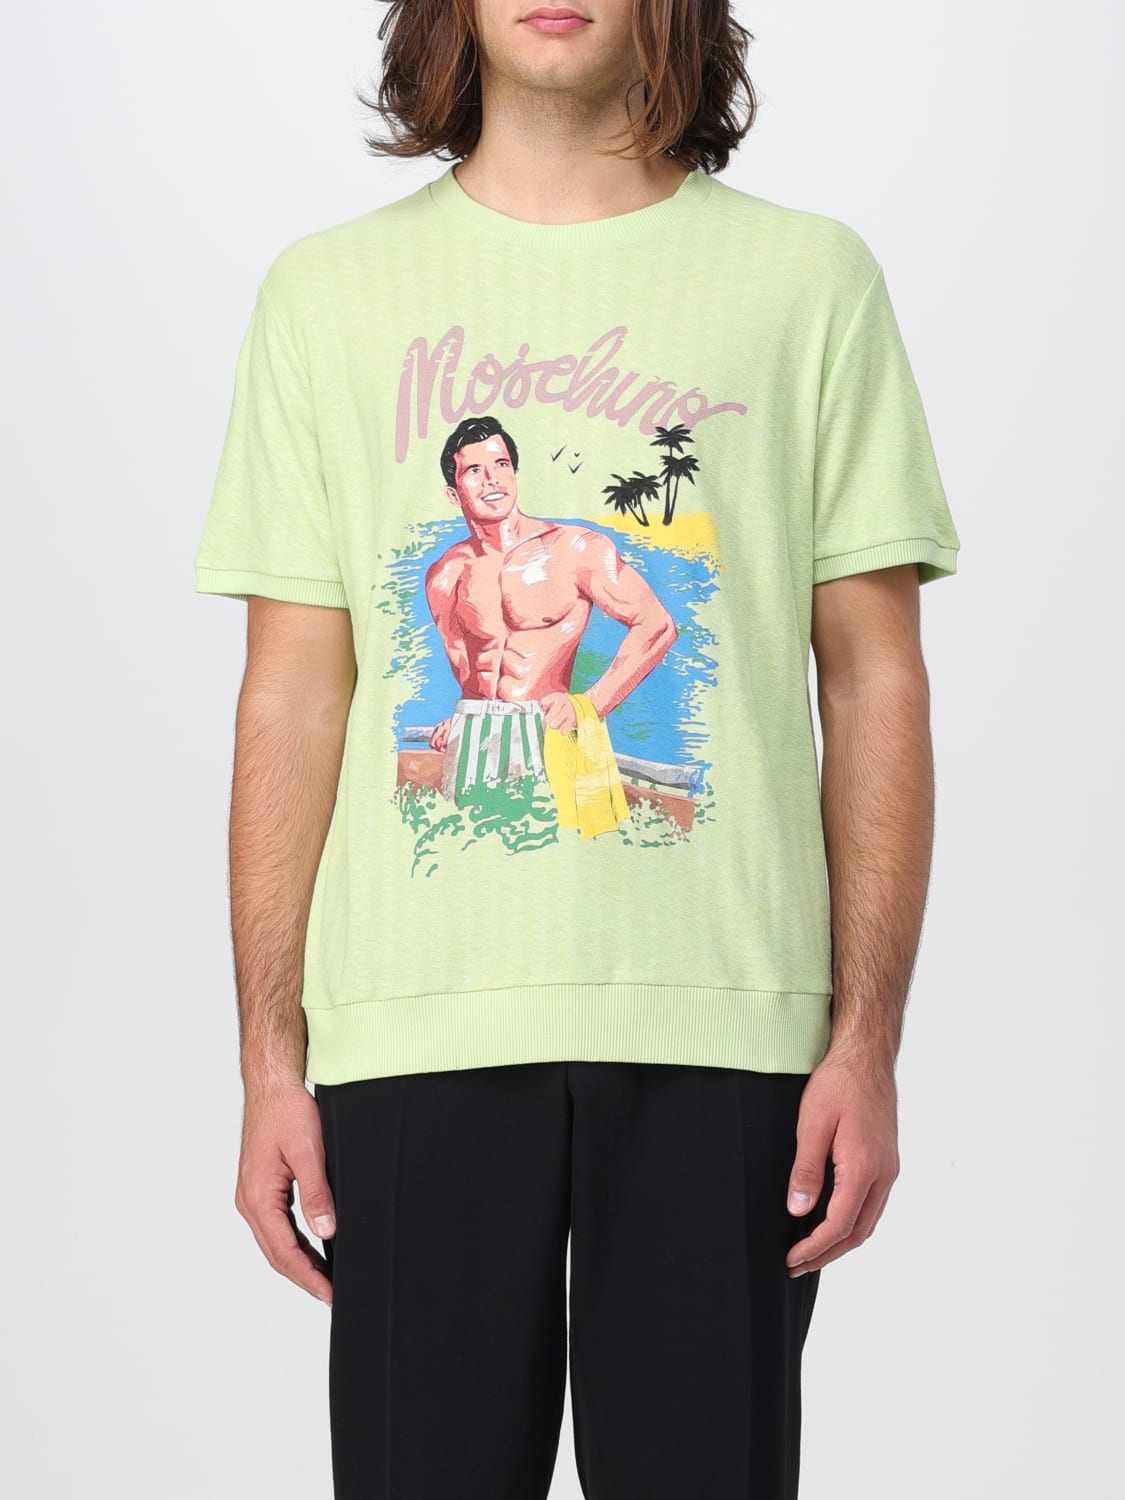 MOSCHINO COUTURE: Camiseta para hombre, Verde  Camiseta Moschino Couture  07162045 en línea en